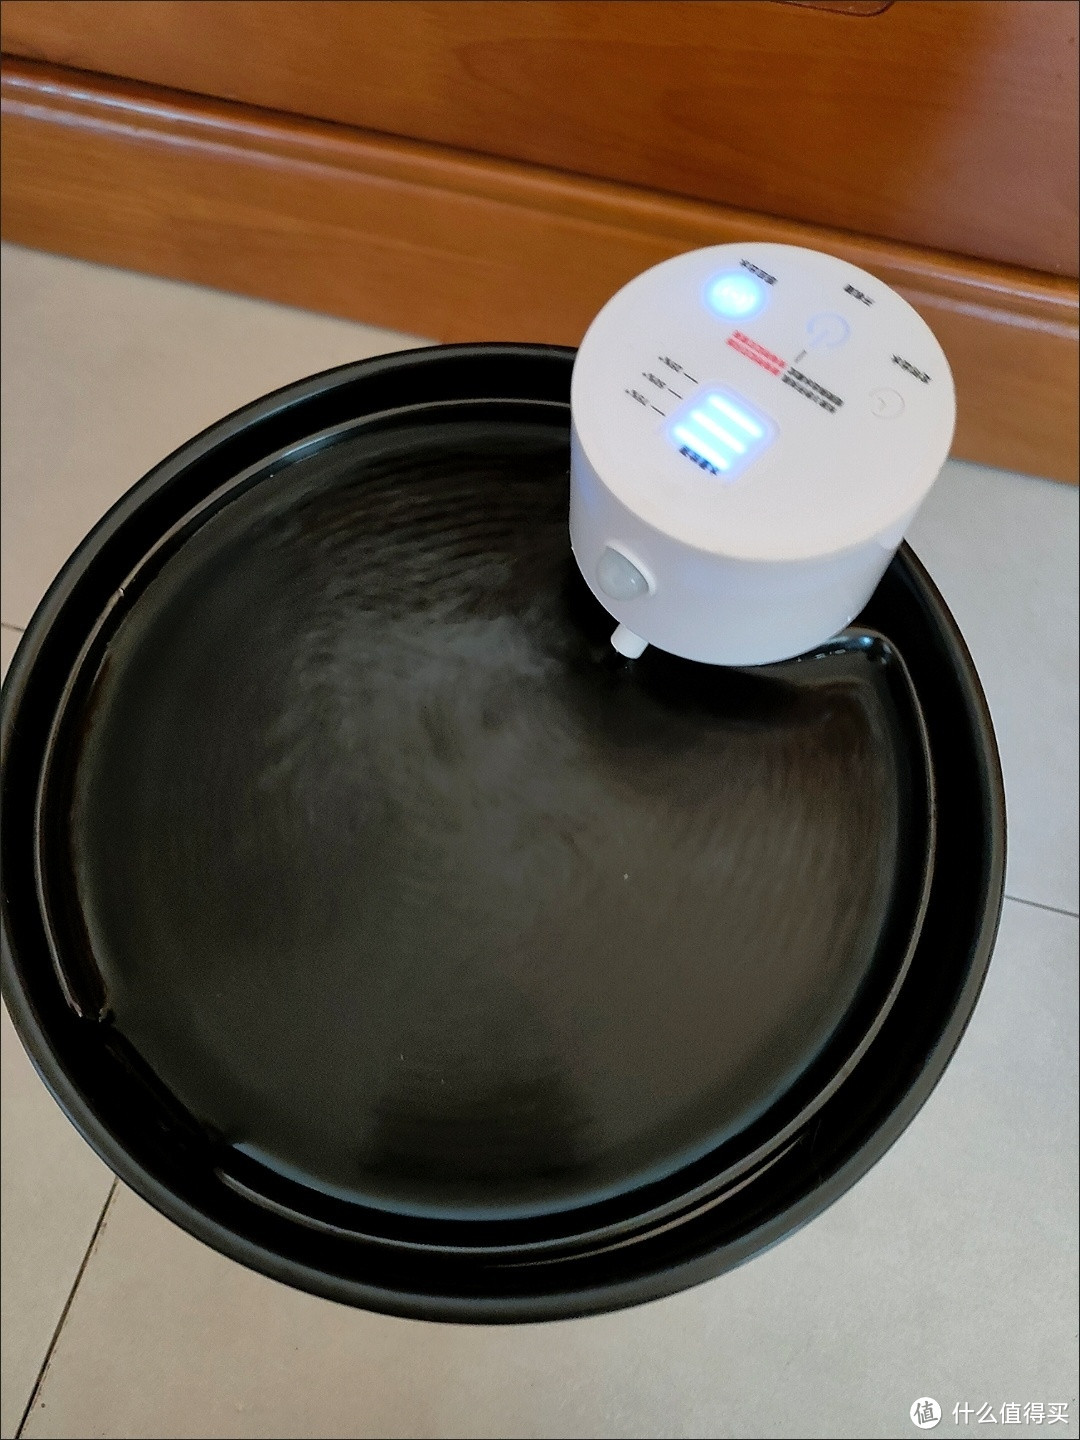 3猫咪自动饮水机进口技术无线陶瓷恒温加热饮水器循环过滤涌动活水